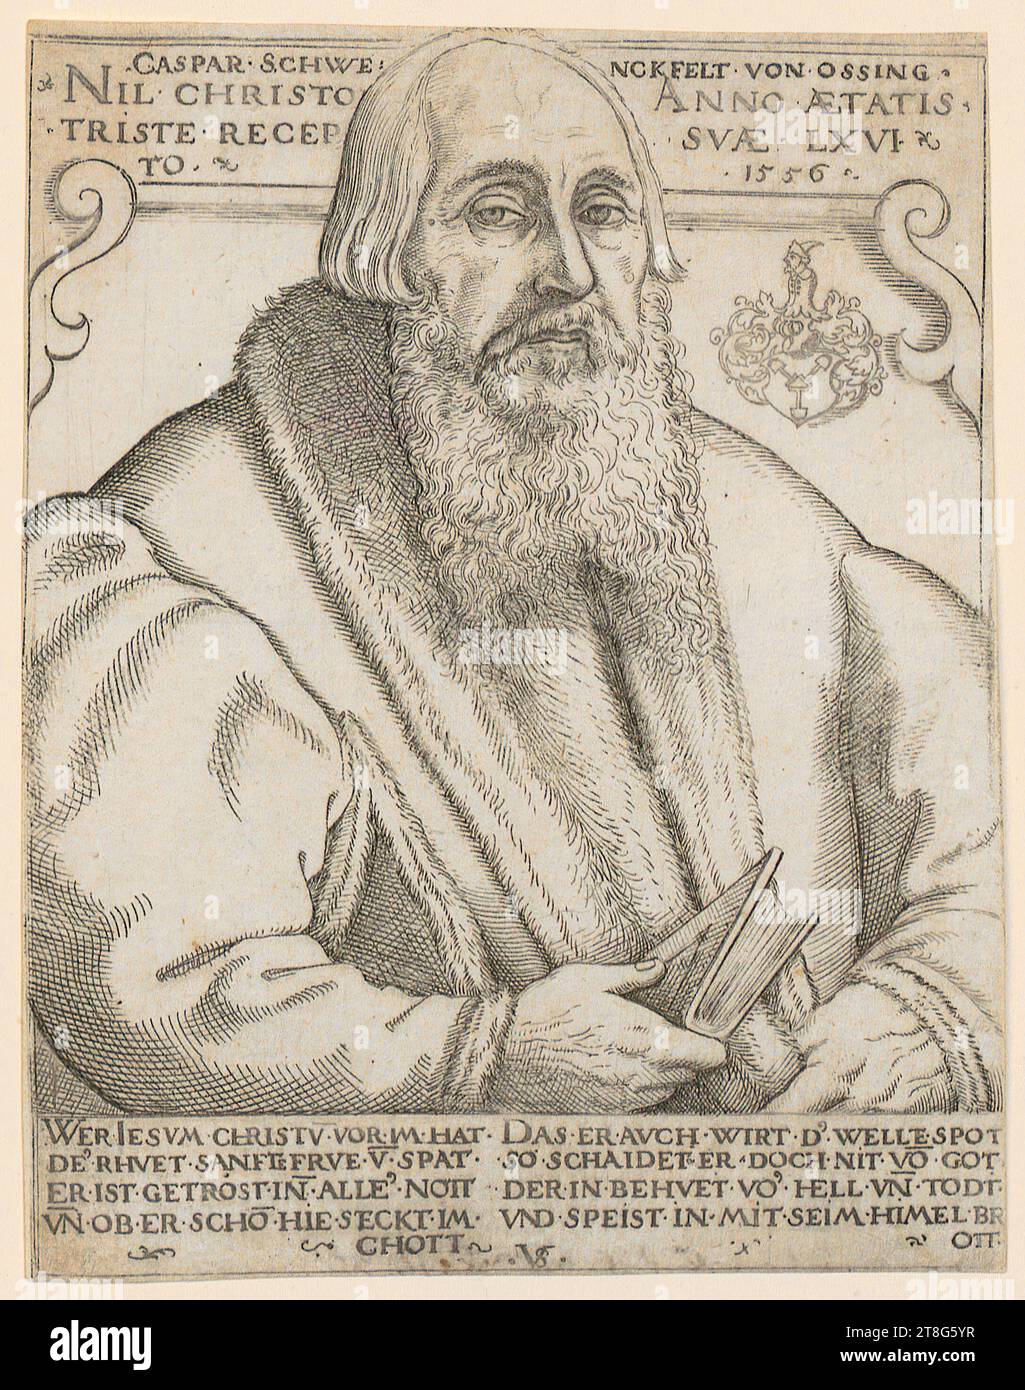 Anton Woensam (1500 avant - vers 1541), artiste Johann Quentel (1546 - 1551 actif), imprimeur, éditeur, Dionysius le Chartreux présente son livre à Marie et à l'enfant Jésus, Virgil Solis (1514 - 1562), portrait de Caspar Schwenckfelt von Ossing, origine du support d'impression : 1556, gravure, taille de la feuille : 14. 1 x 10,9 cm, inscription sur le dessus 'CASPAR SCHWE NCKFELT VON OSSING, NIL CHRISTO, TRISTE RECEP, TO, ANNO AETATIS, S Banque D'Images